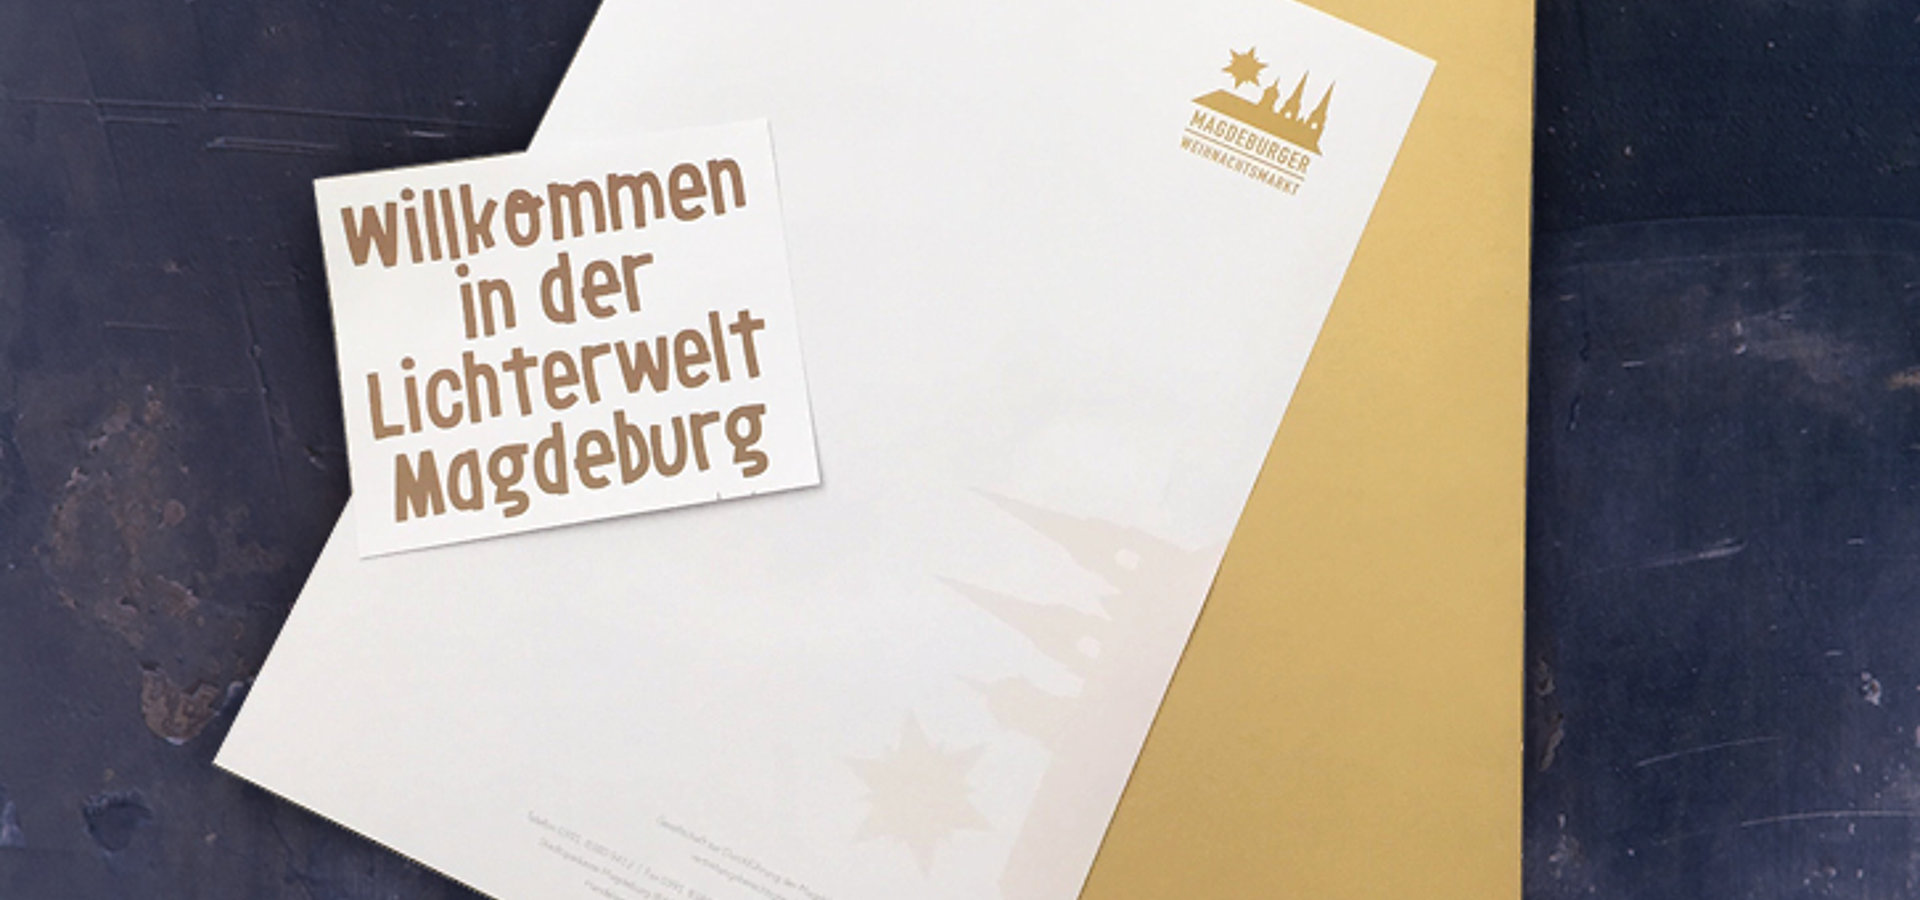 Geschäftsausstattung: Briefbogen Magdeburger Weihnachtsmarkt